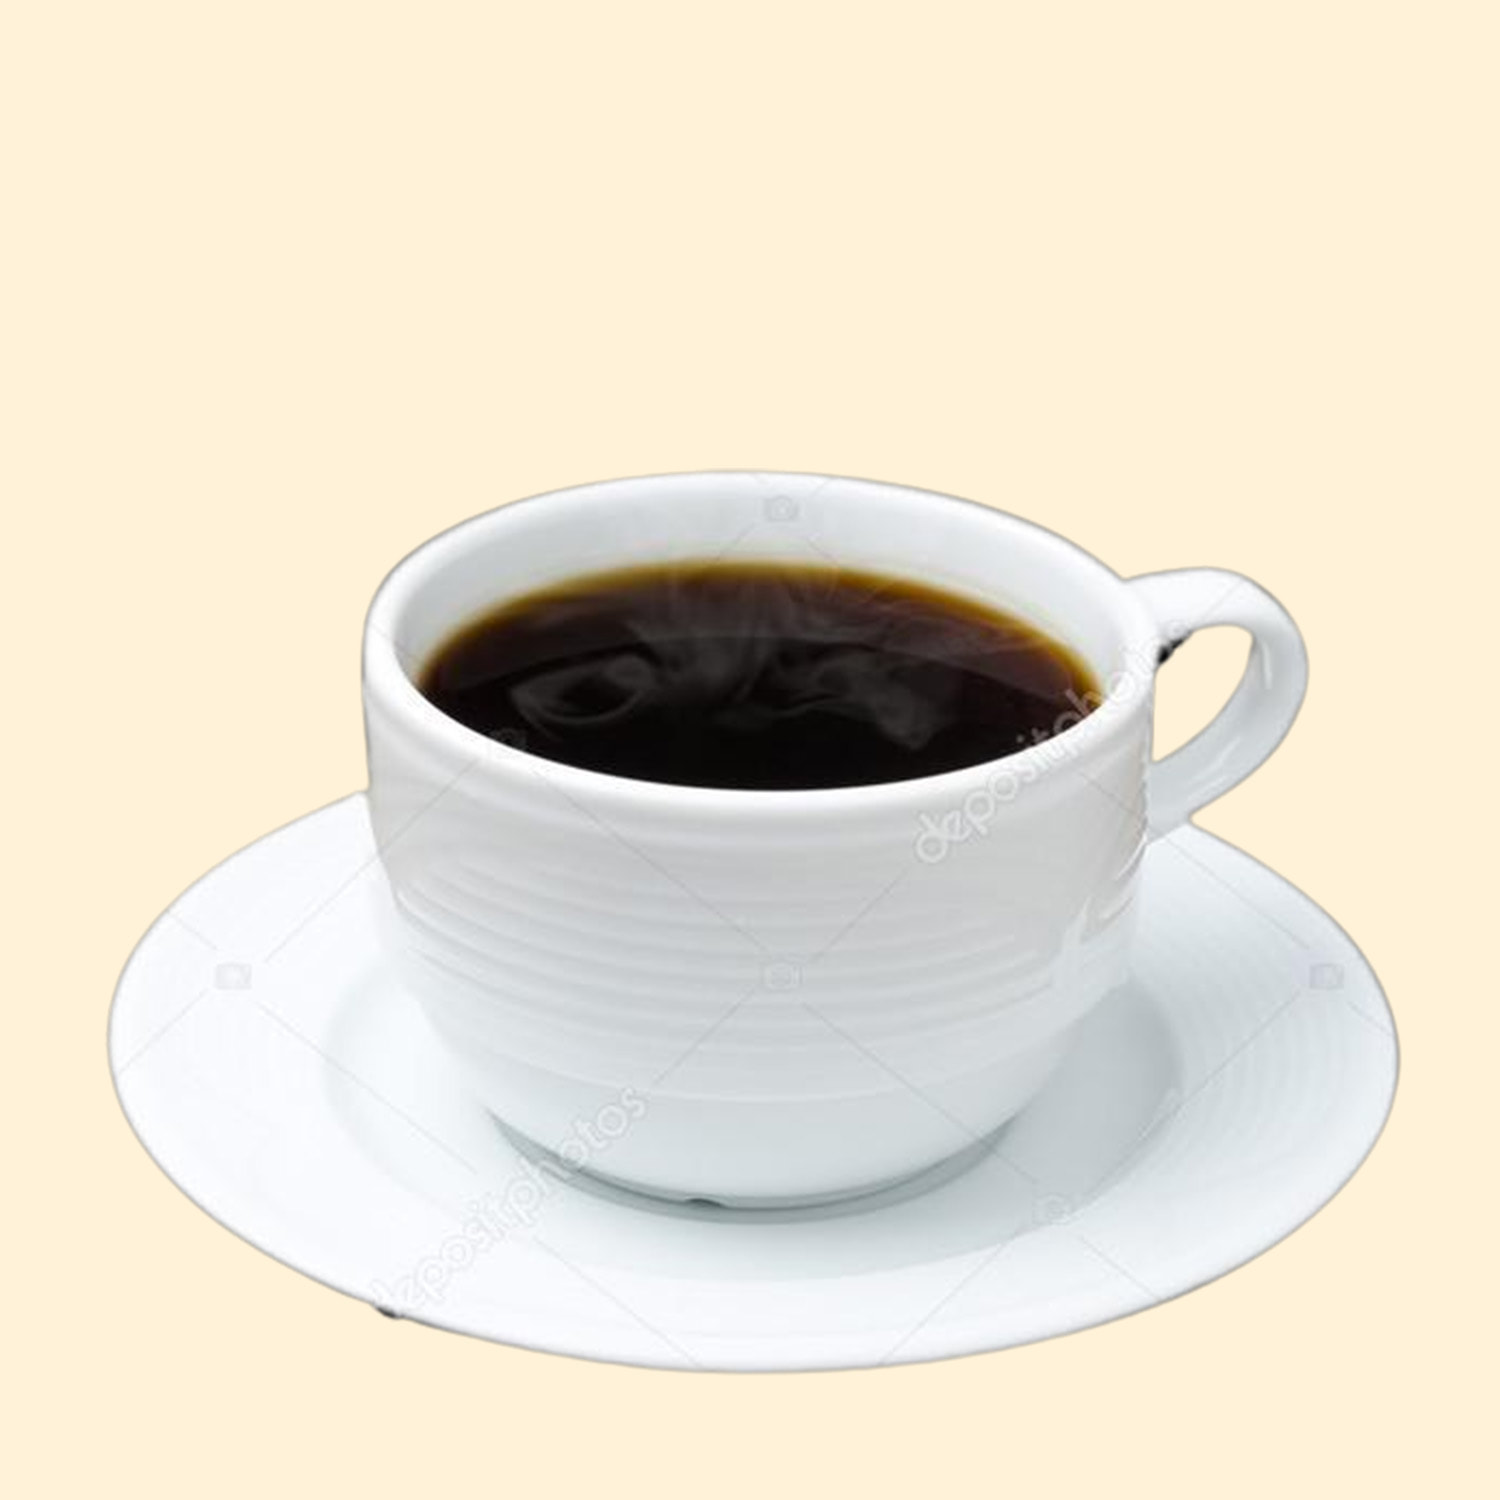 Nếu bạn là một tín đồ của cà phê, hãy xem hình ảnh này! Một tách cà phê đen nóng thơm ngon, vị đắng đúng chuẩn sẽ khiến bạn say mê ngay từ cái nhìn đầu tiên. Hãy tưởng tượng bạn đang cầm lấy tách cà phê nóng, hít vào làn khói đầy hương thơm và thưởng thức thật sự thoải mái.